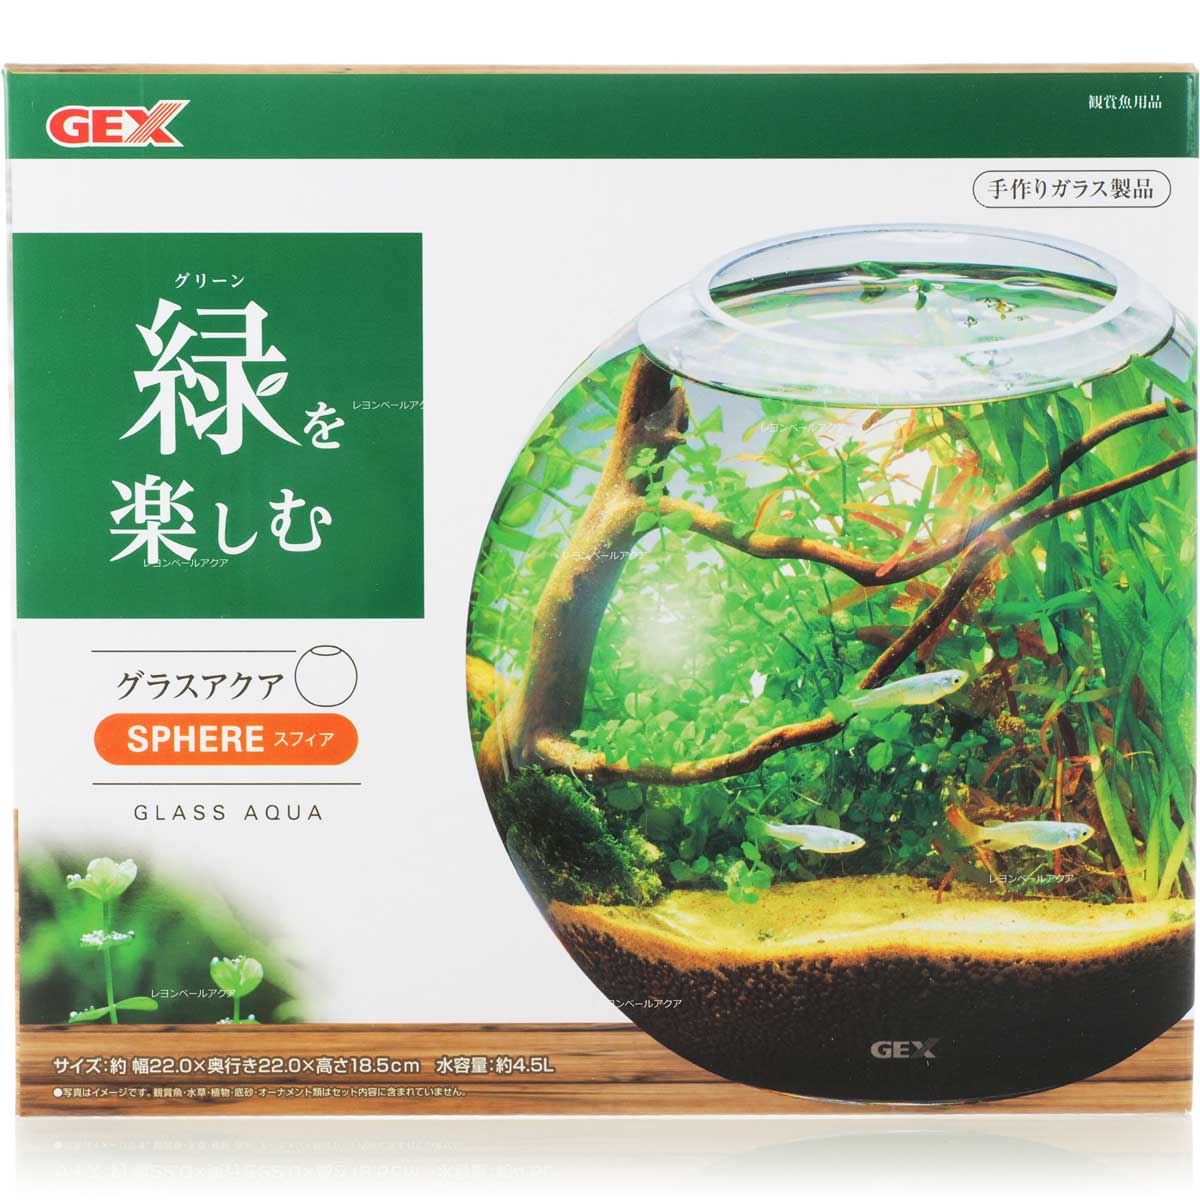 日本全国 送料無料 全国送料無料 在庫有り 即OK GEX スフィア 新商品 激安格安割引情報満載 グラスアクアリウム